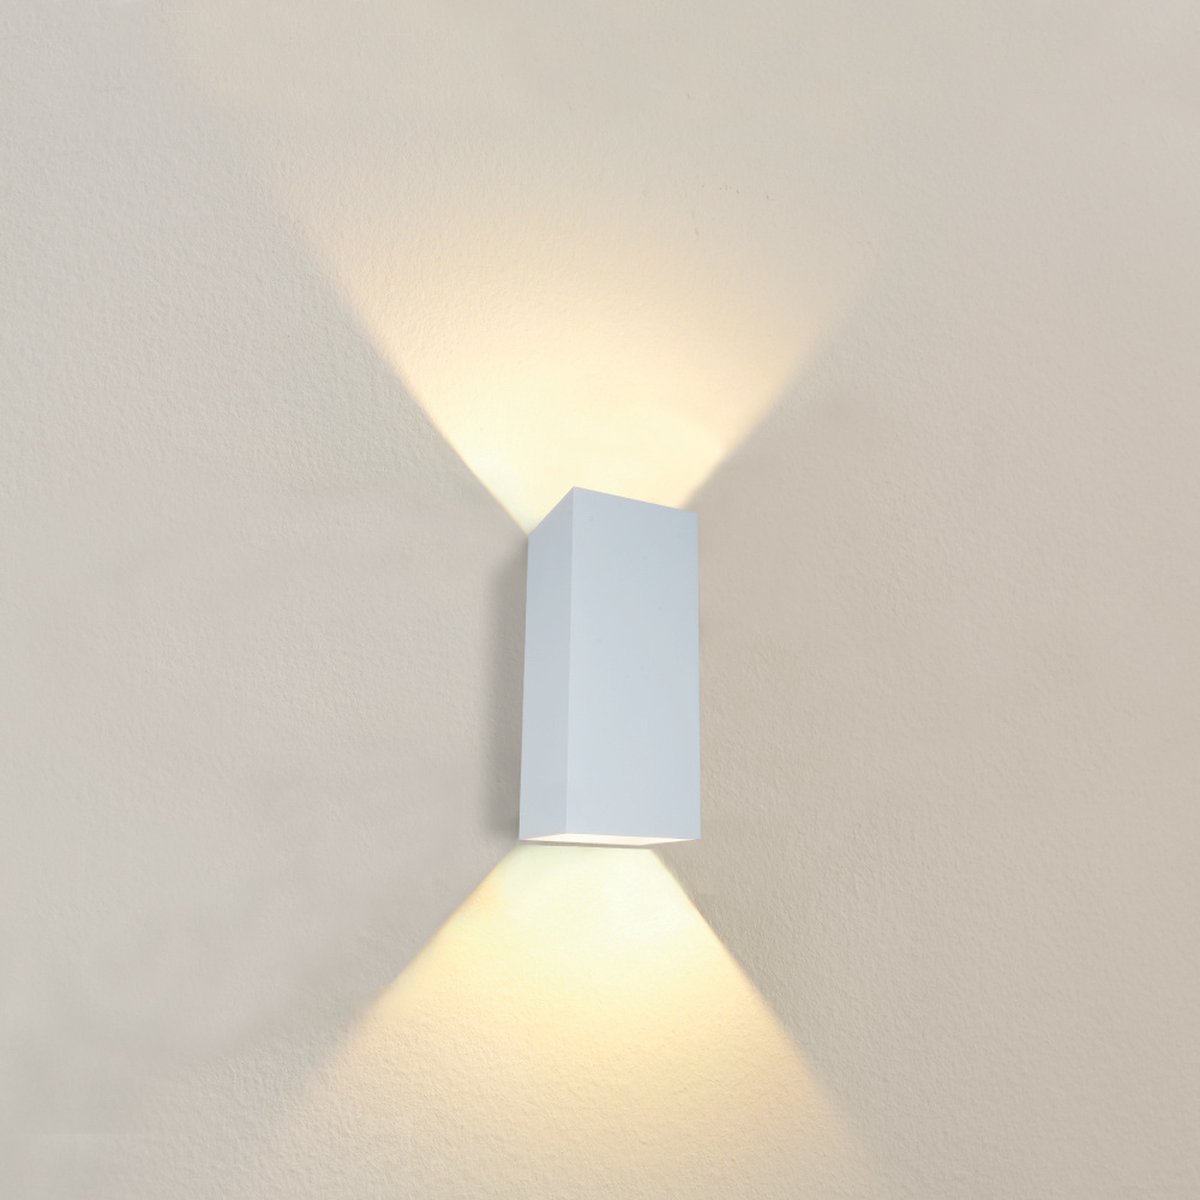 Wandlamp Dante 2 XL Wit - 10x9x24cm - 2x GU10 LED 4,8W 2700K 355lm - IP20 - Dimbaar > wandlamp wit | wandlamp binnen wit | wandlamp hal wit | wandlamp woonkamer wit | wandlamp slaapkamer wit | led lamp wit | sfeer lamp wit